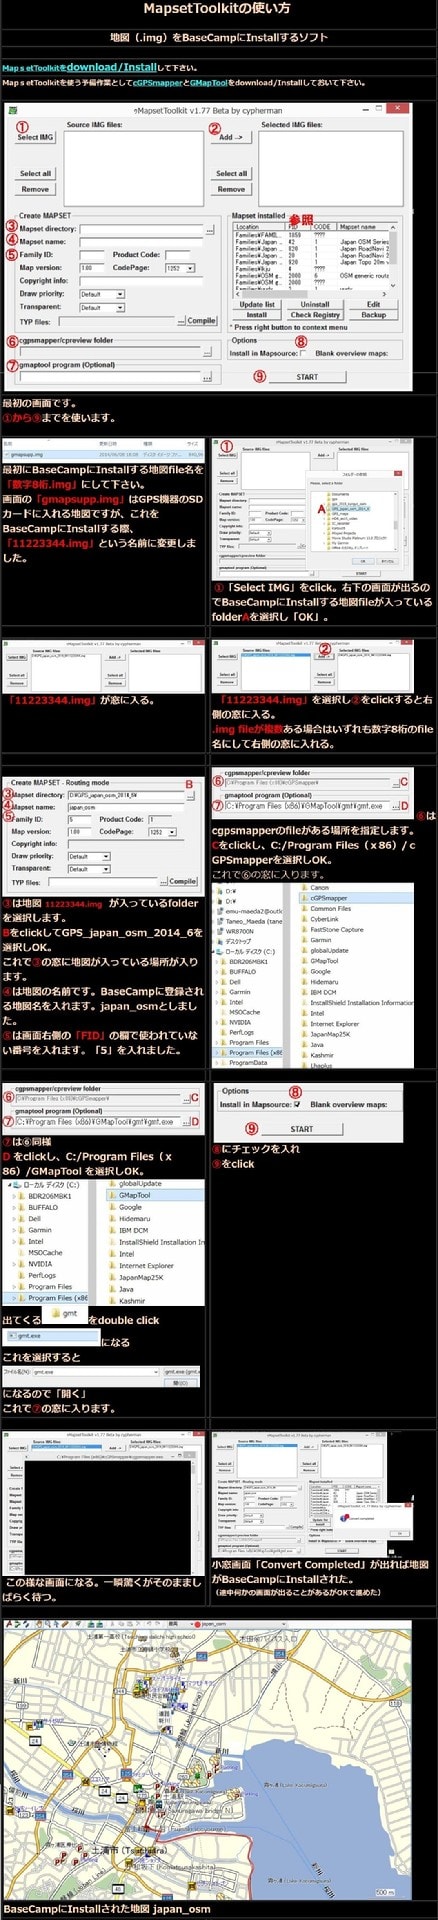 ガーミン端末への格納用img形式OSM日本地図FileをBaseCampに組み込む 